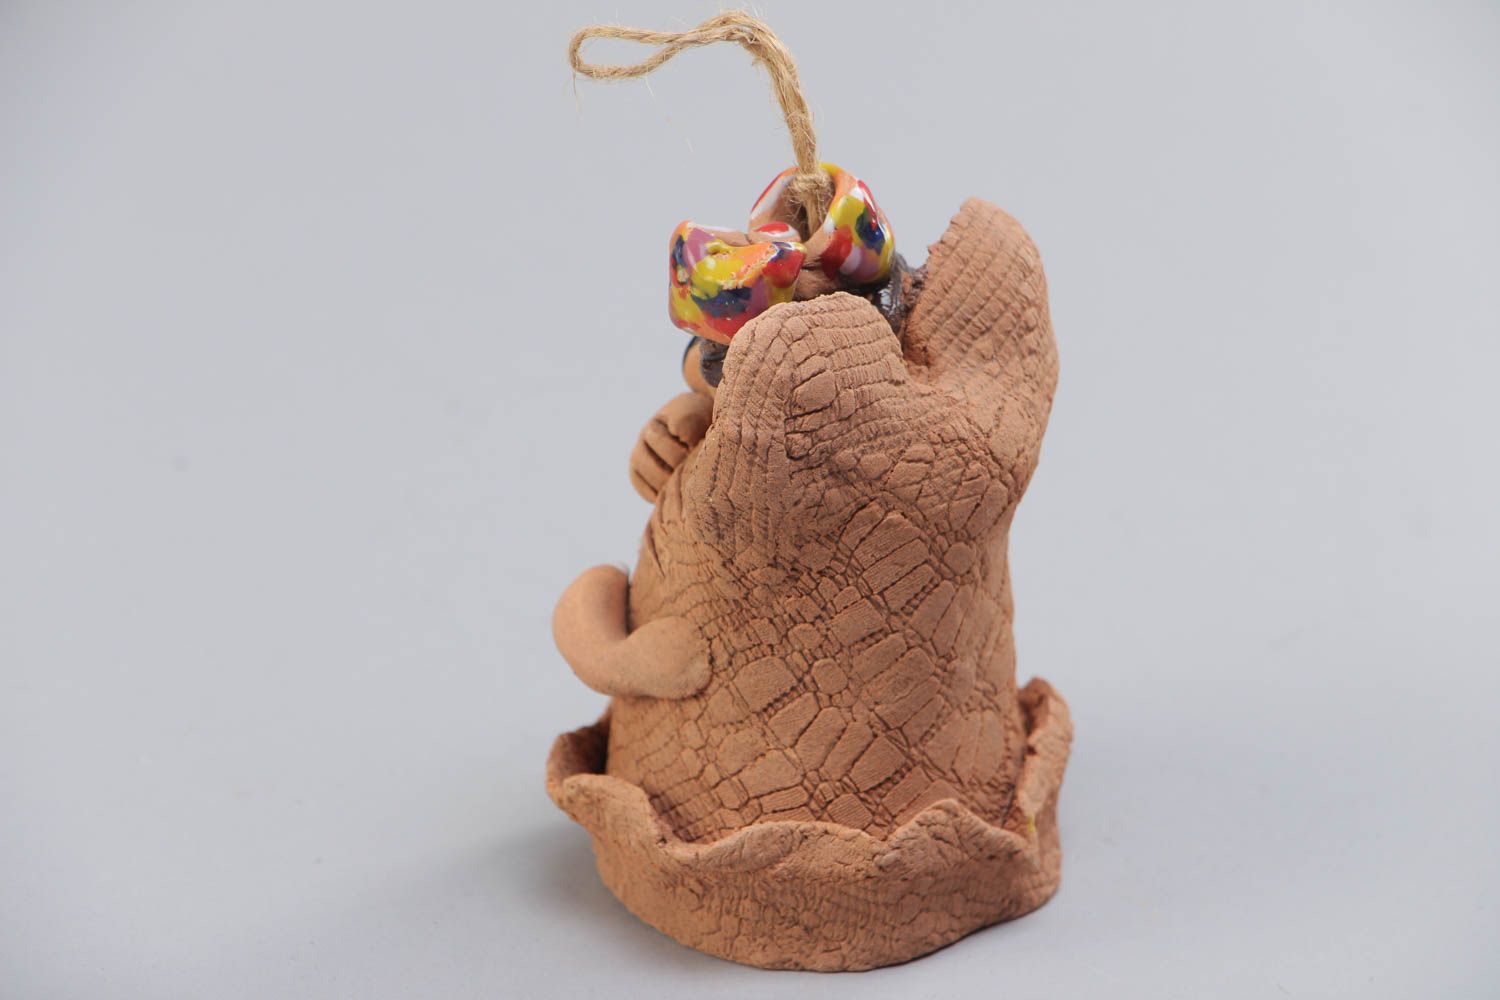 Расписанный акриловыми красками глиняный колокольчик в виде мышки ручной работы фото 3